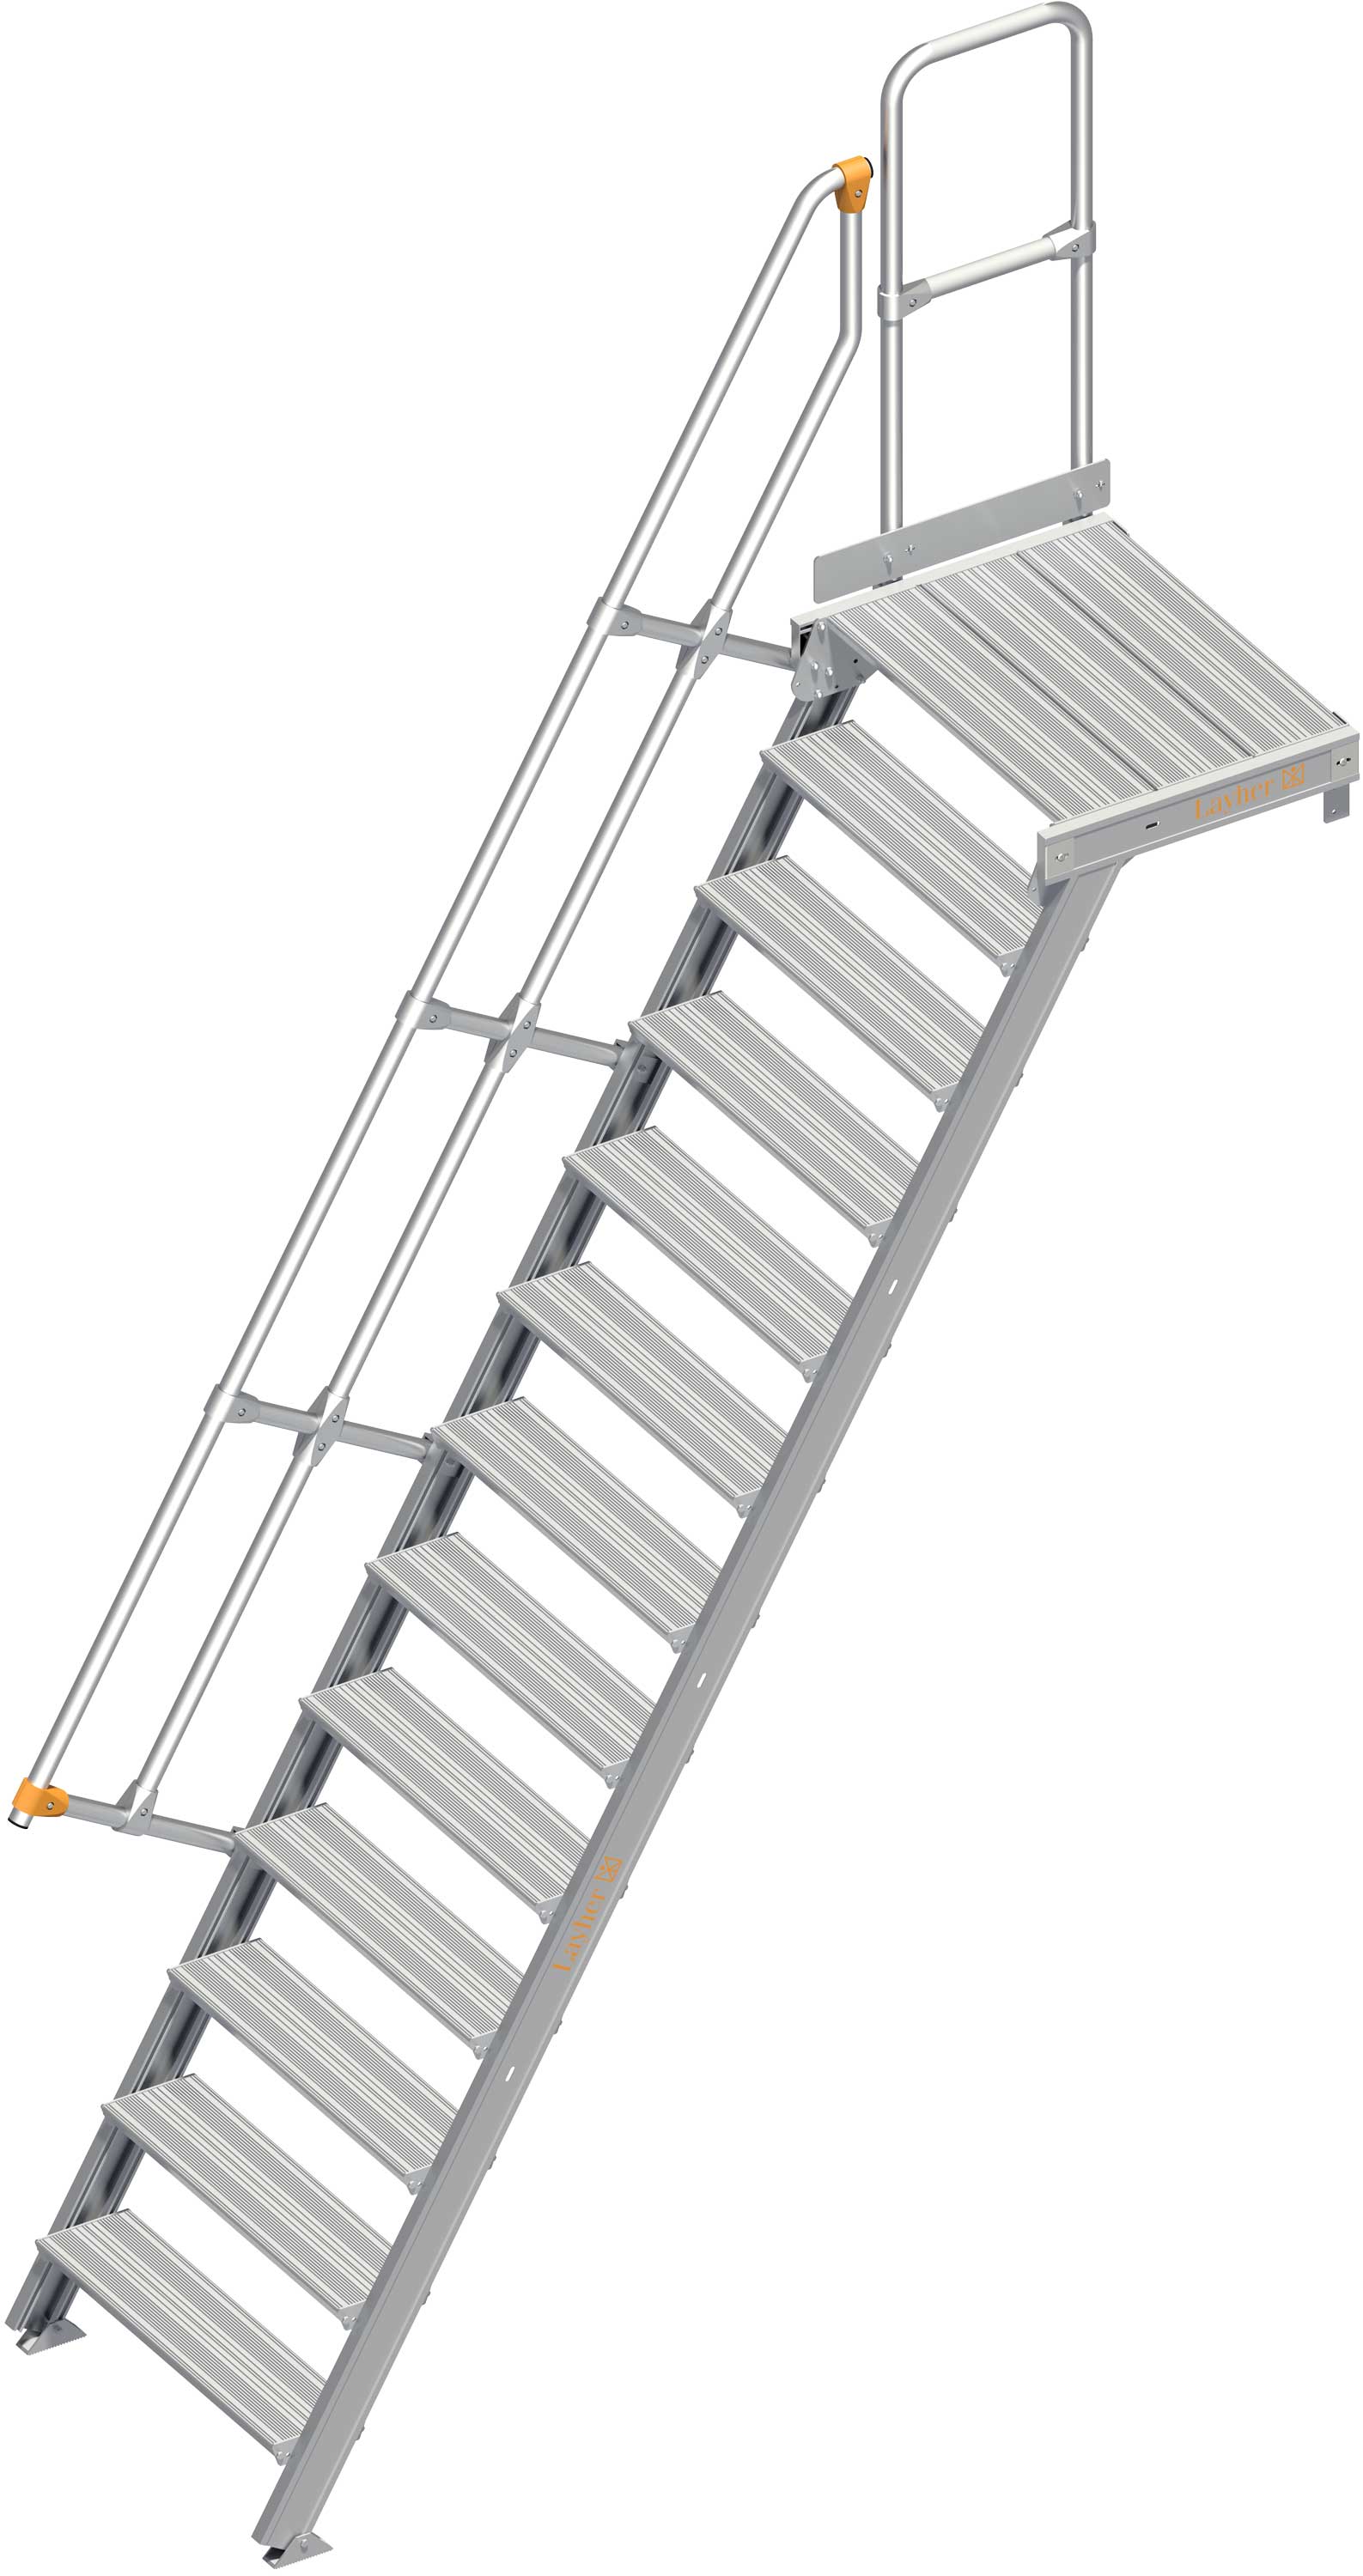 Layher Plattformtreppe 60° SG 13 Stufen - 800 mm breit